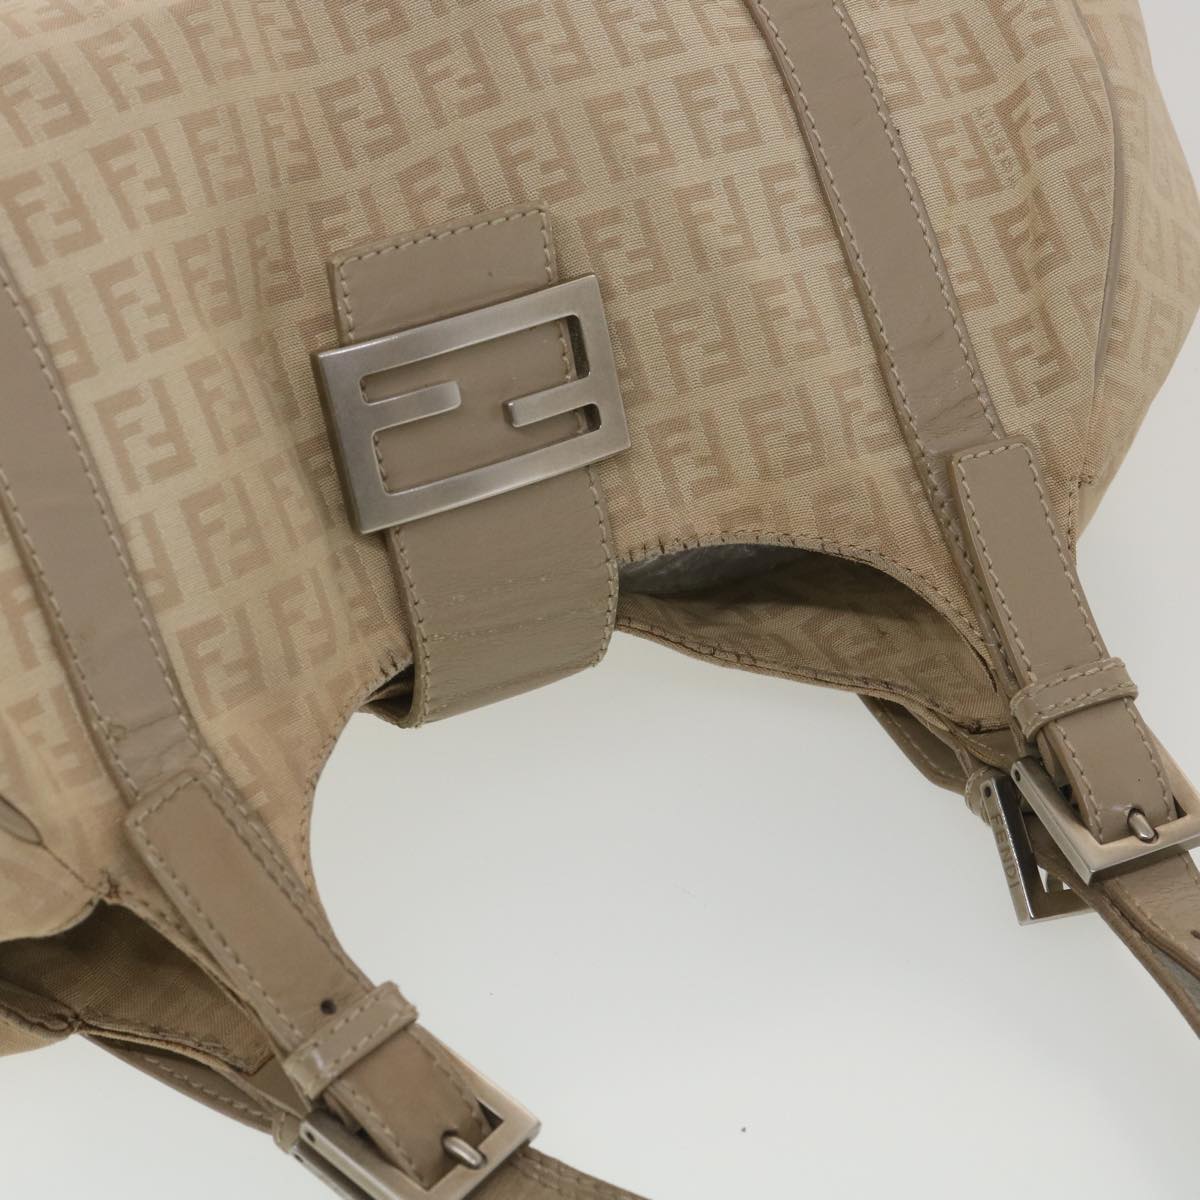 FENDI Zucchino Canvas Shoulder Bag Beige 2373-8BR091-KU7-048 Auth bs4404